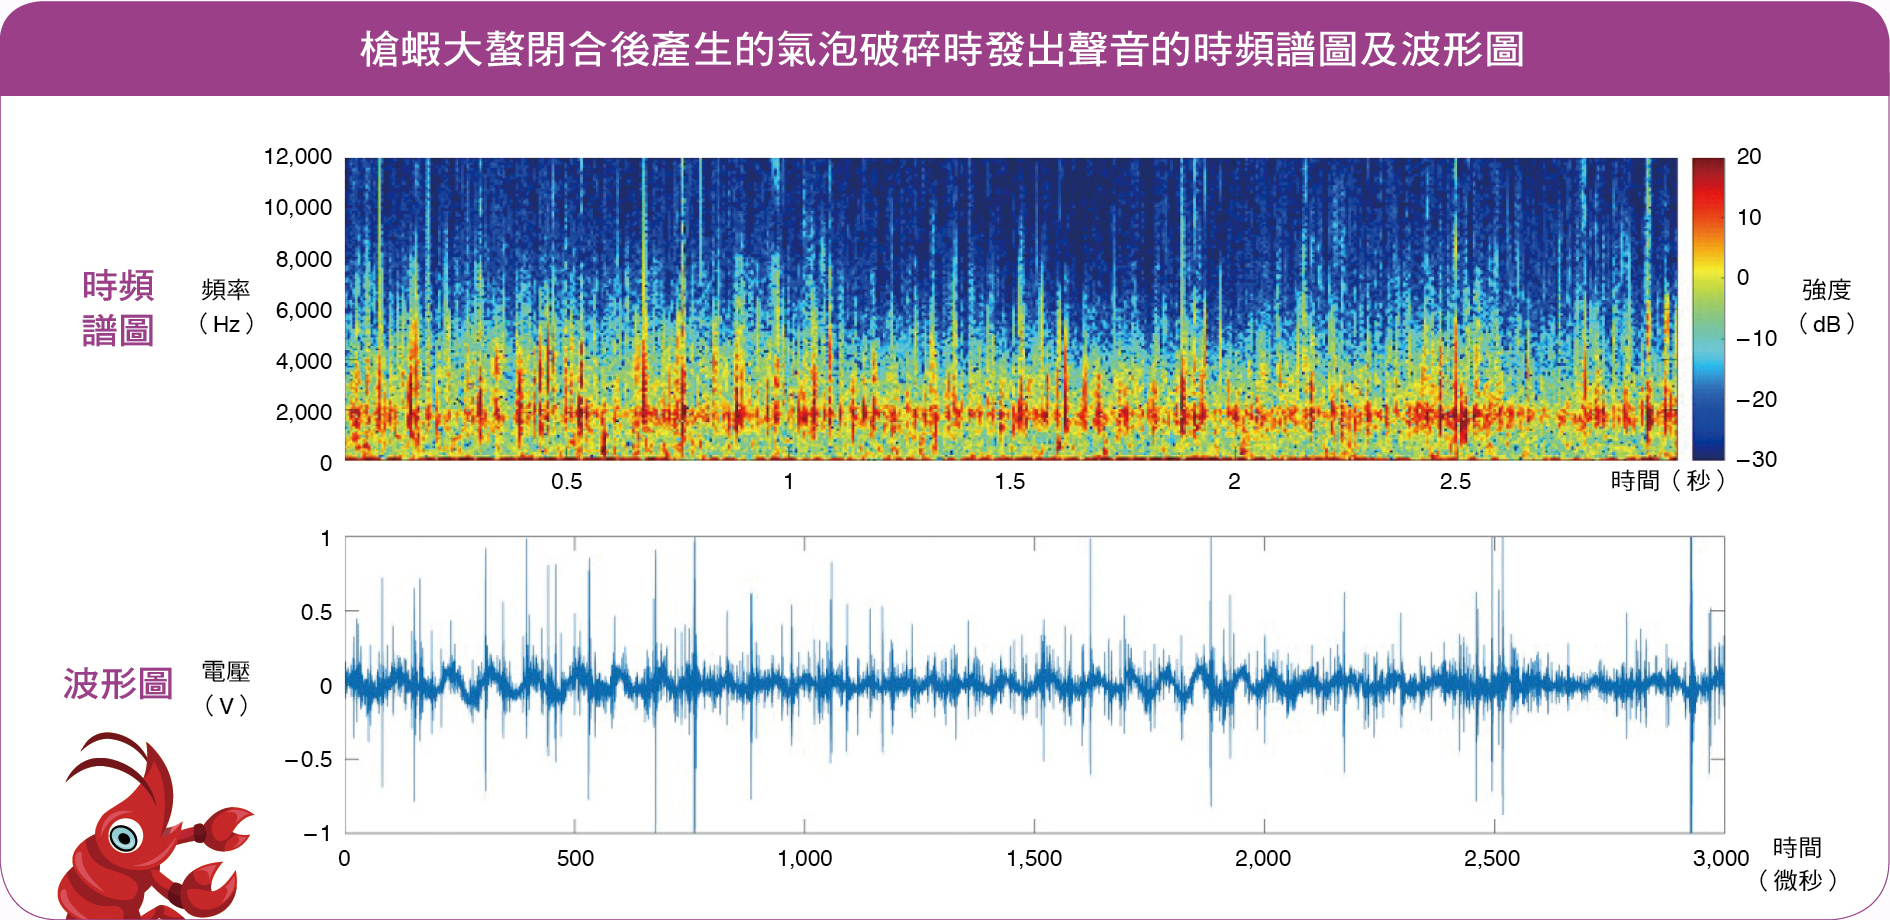 槍蝦大螯閉合後產生的氣泡破碎時發出聲音的時頻譜圖及波形圖